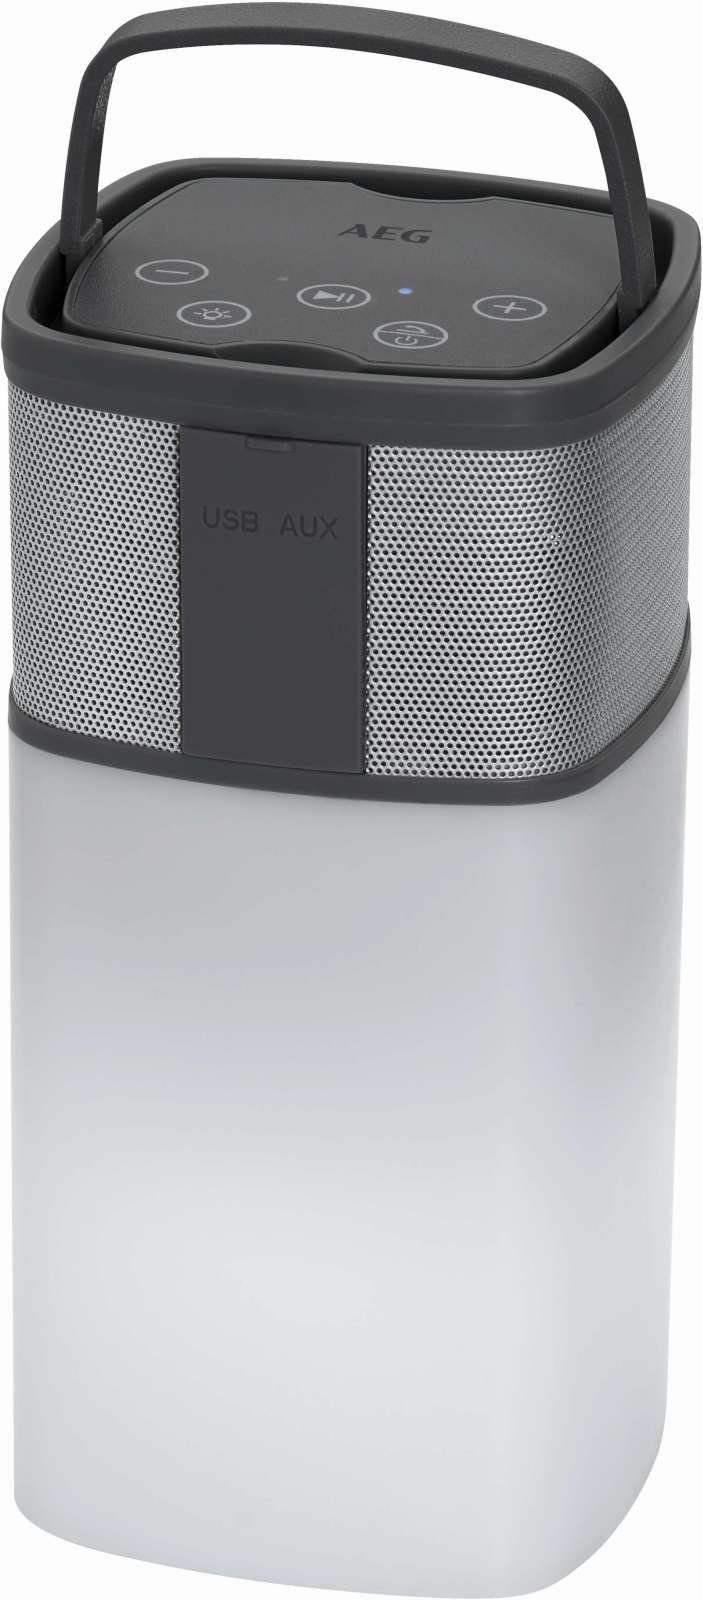 AEG AEG weiß BSS 4841 Bluetooth-Lautsprecher Powerbank Soundsystem Lautsprecher